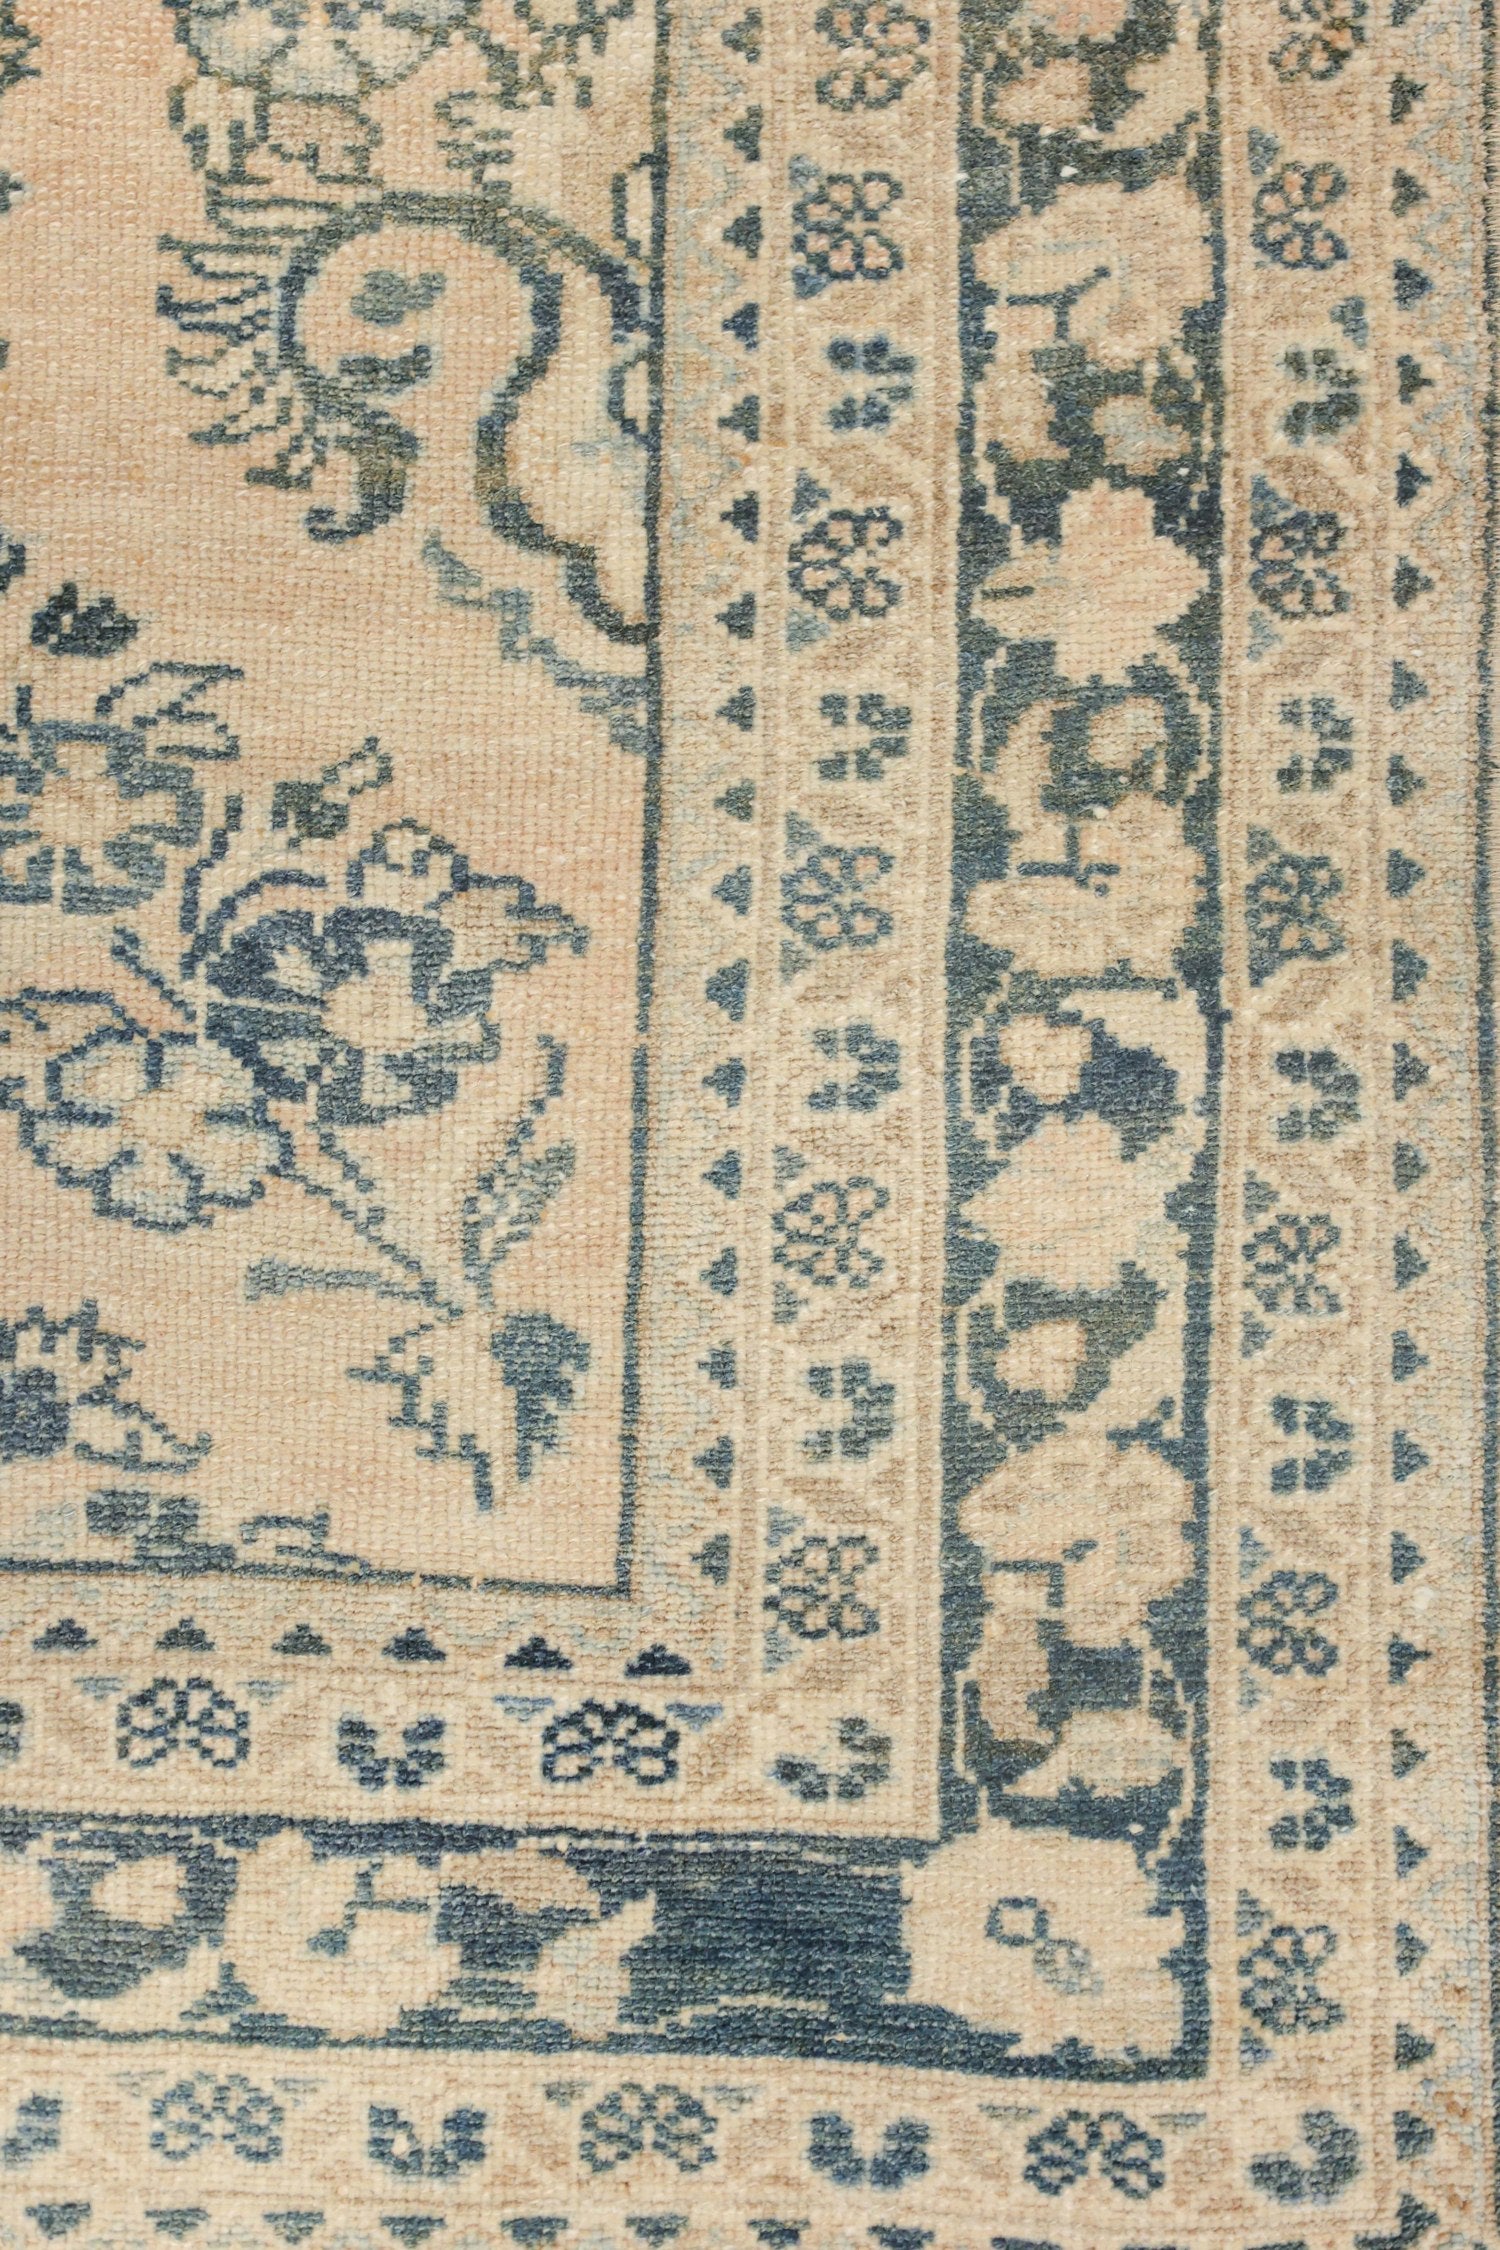 Vintage Lilihan Handwoven Traditional Rug, J73363